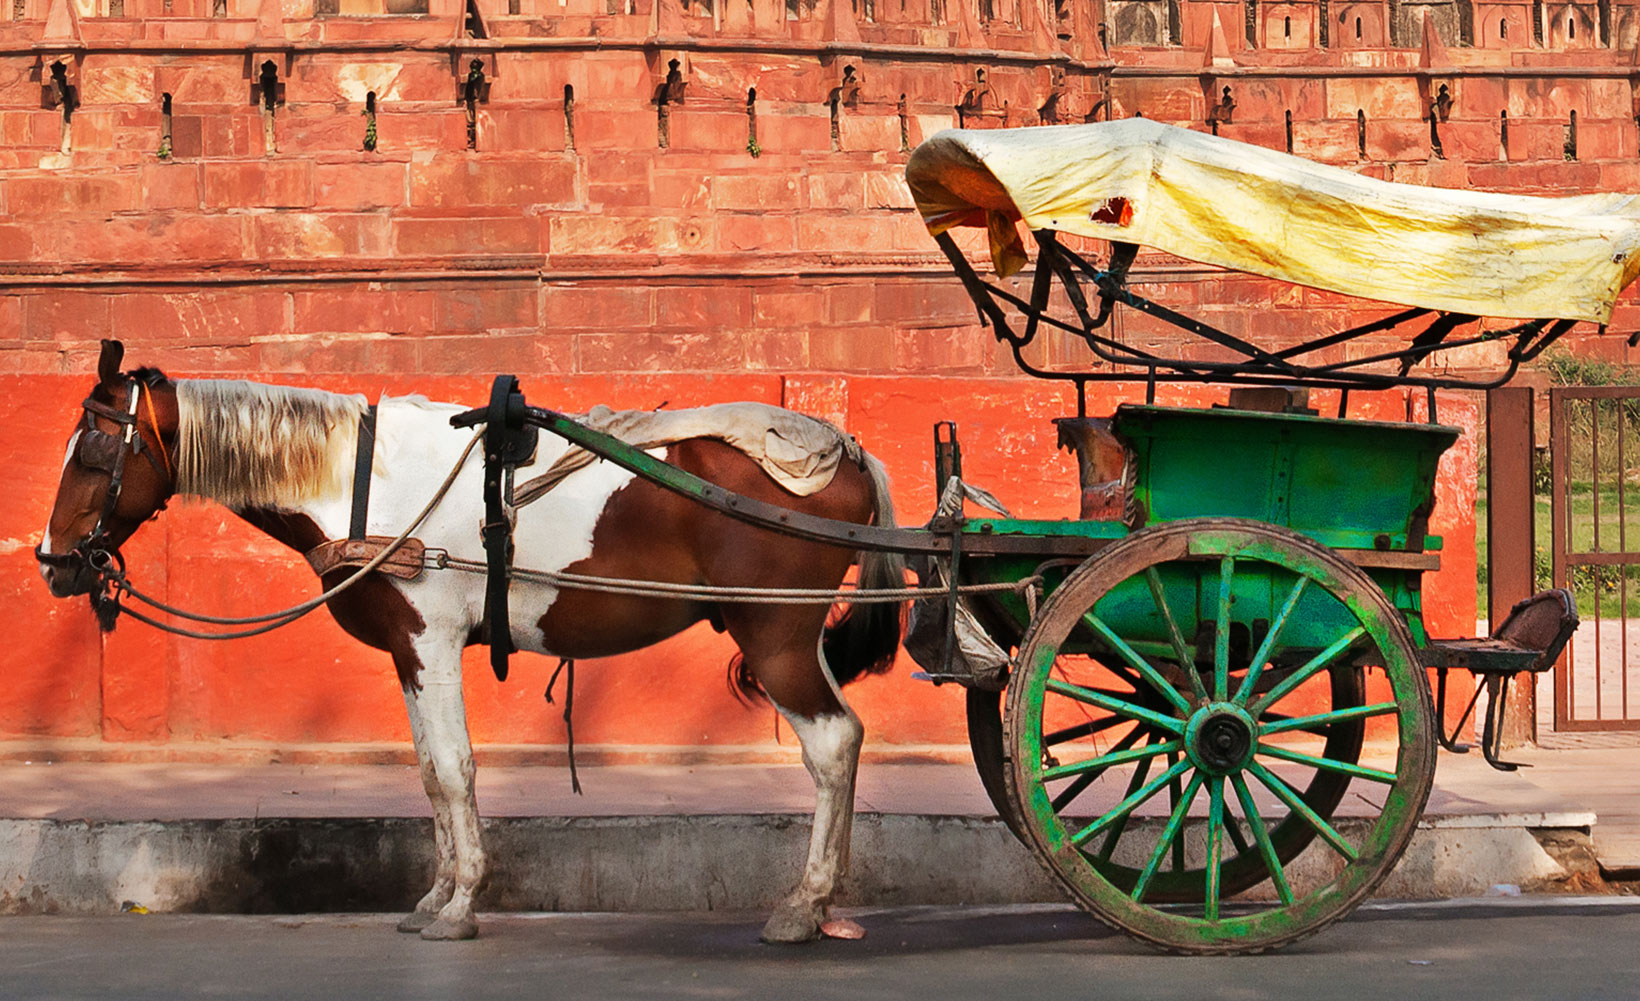 Machen Sie einen Spaziergang jenseits der Touristenattraktionen in Agra